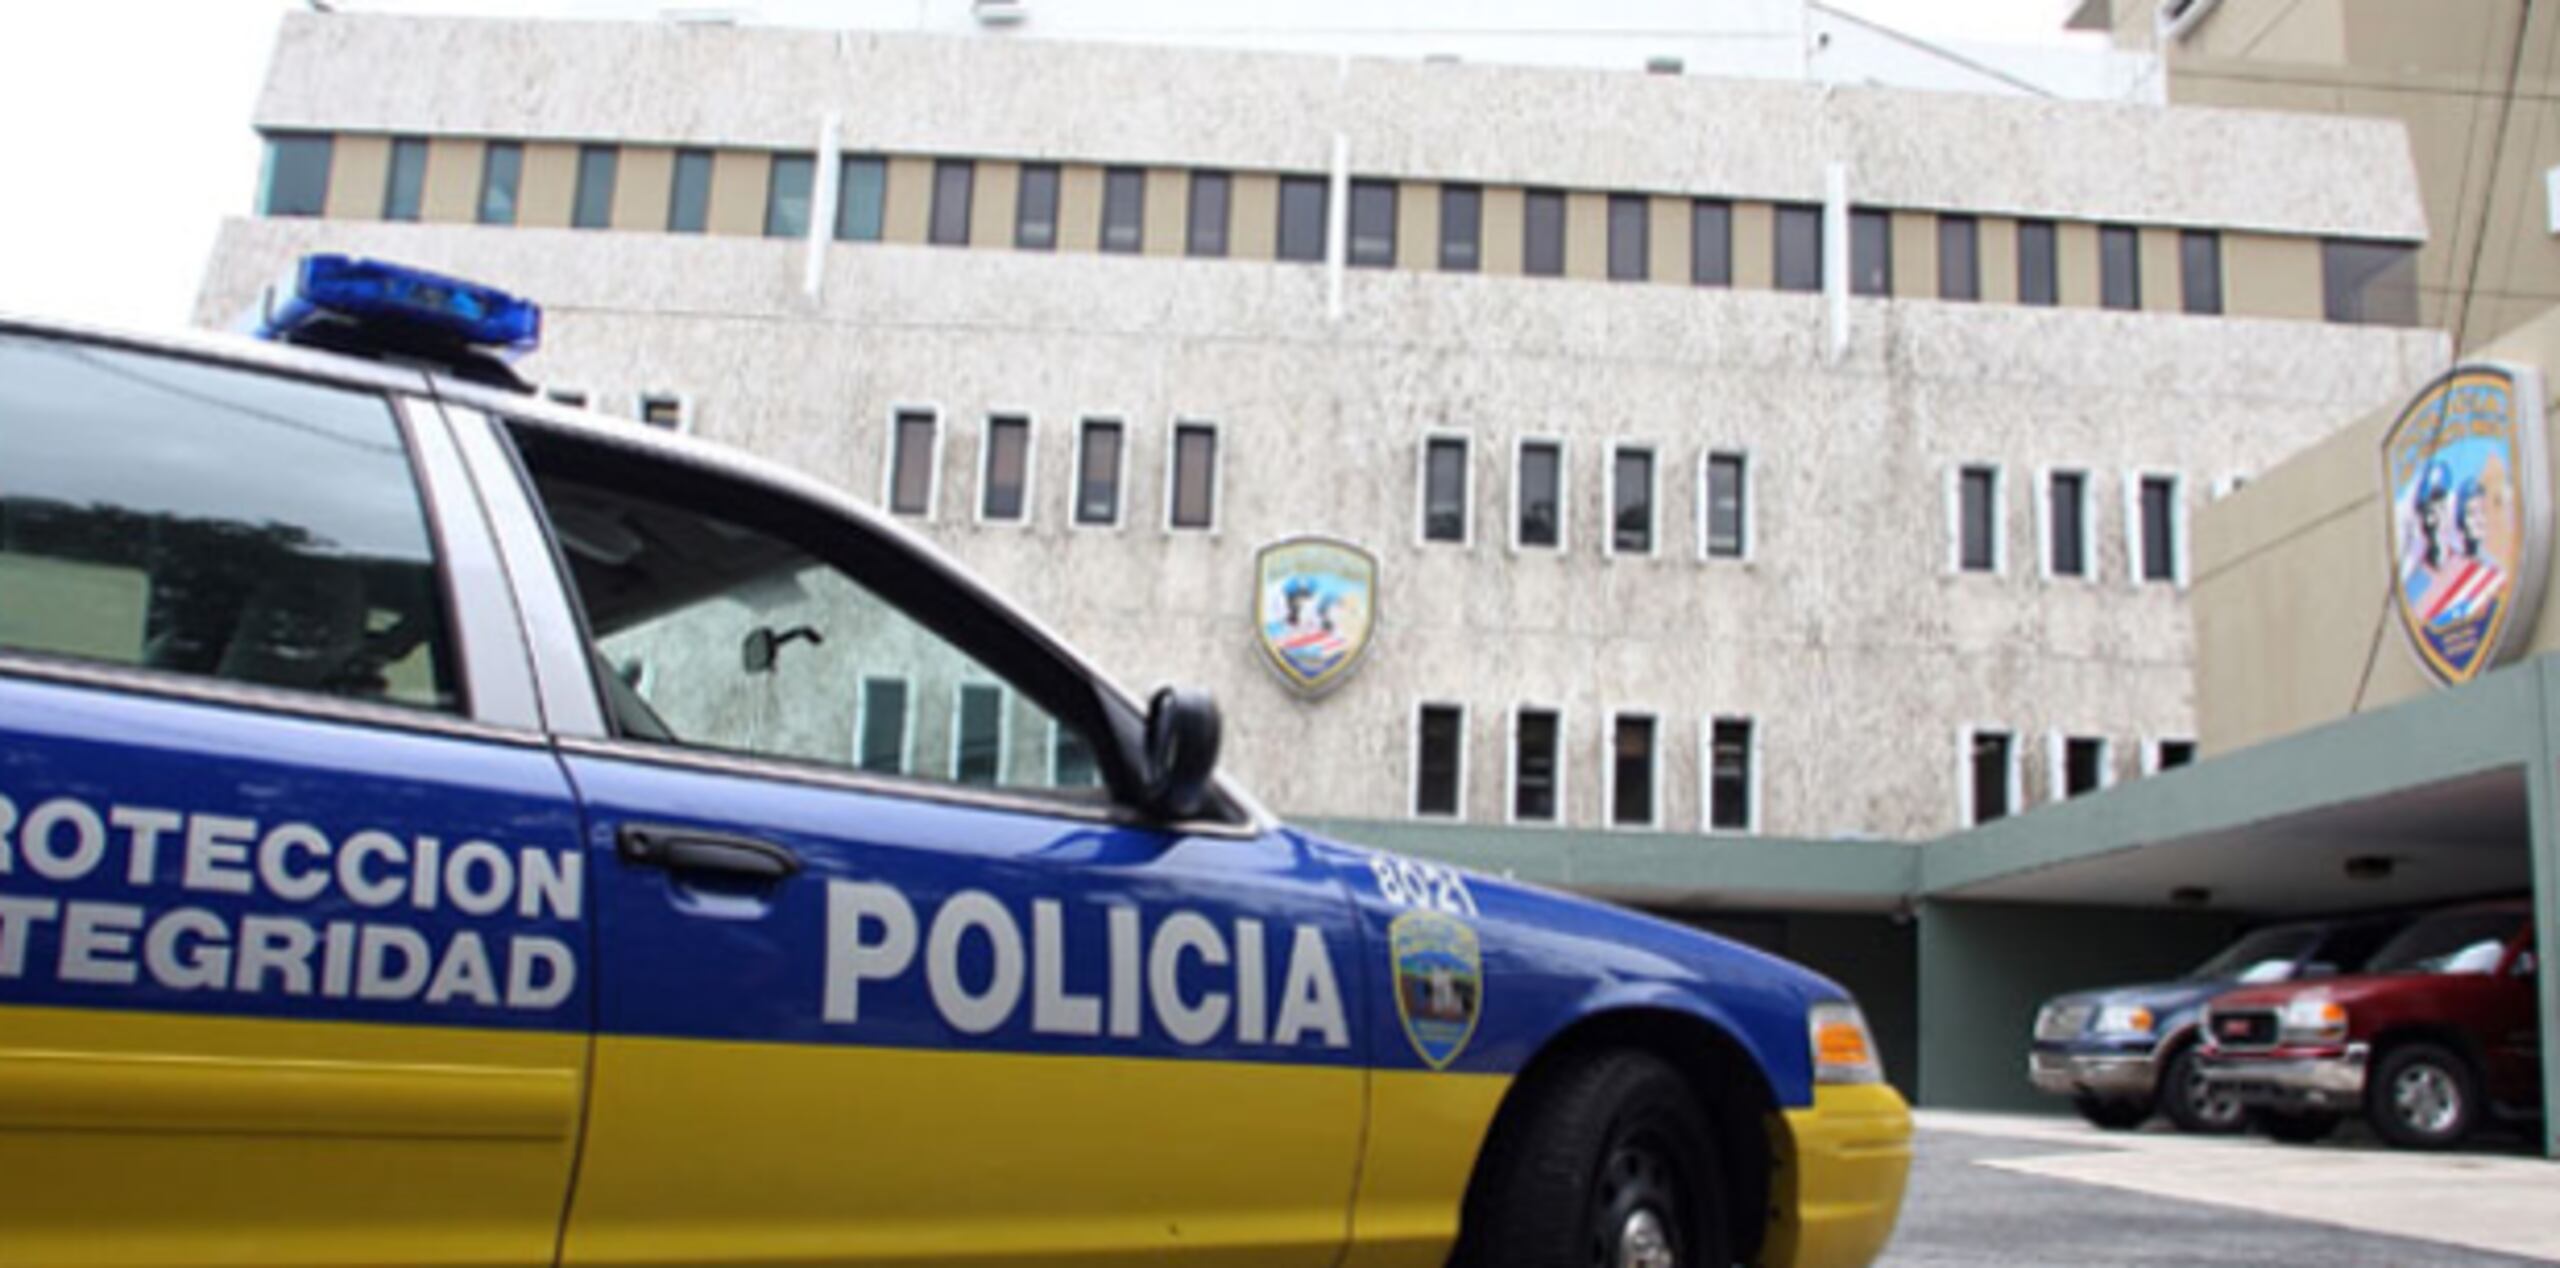 Los dos conductores resultaron heridos y fueron transportados al hospital Buen Samaritano en Aguadilla. (Archivo)